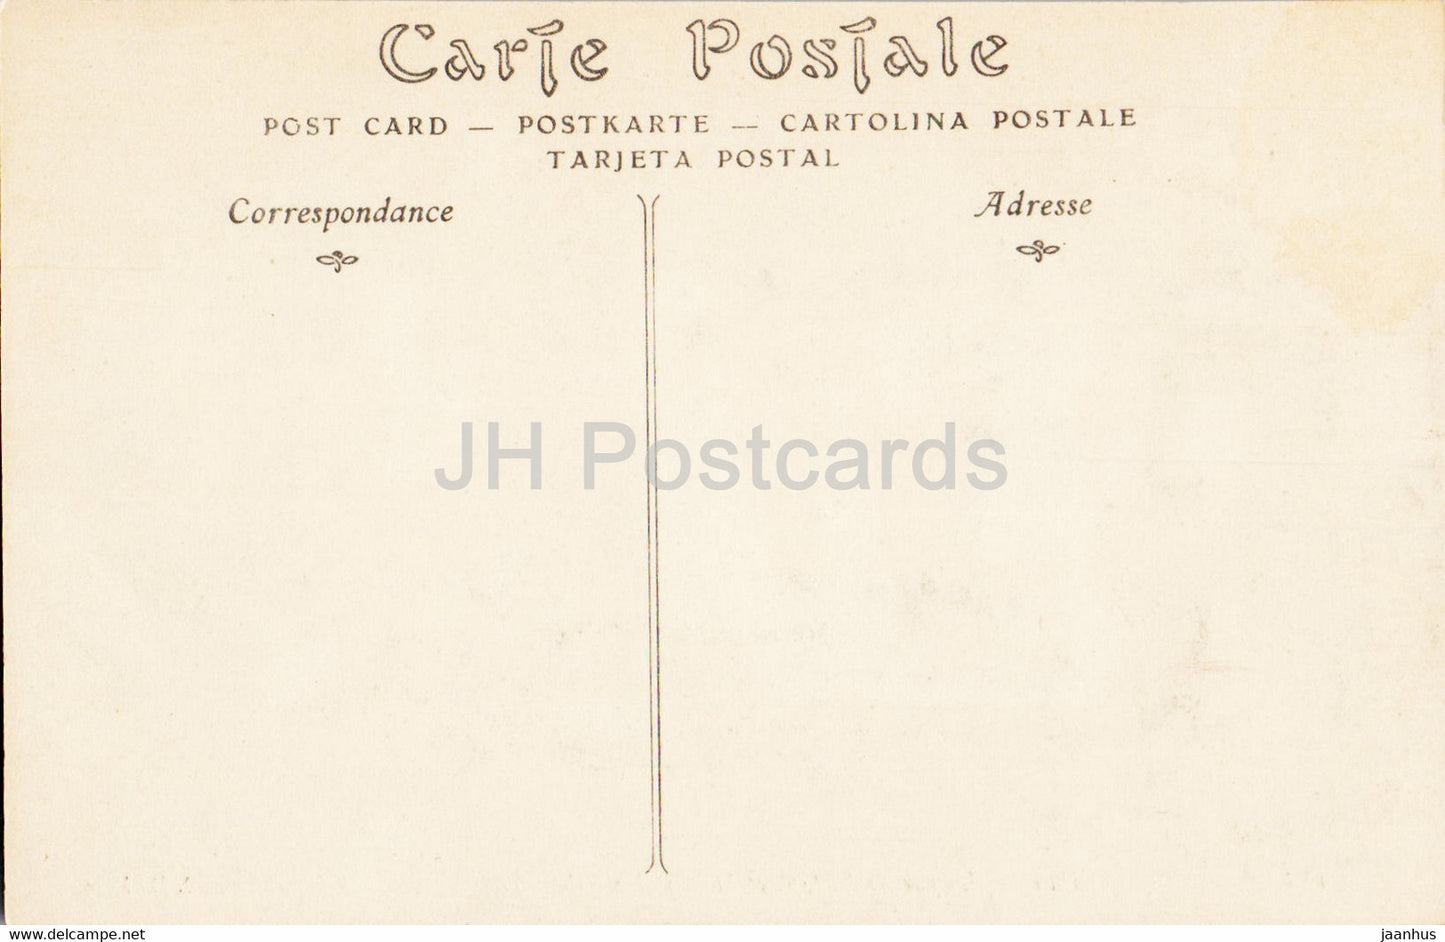 Reims - La rue de l'Etape et la Fontaine Sube - 188 - old postcard - France - unused